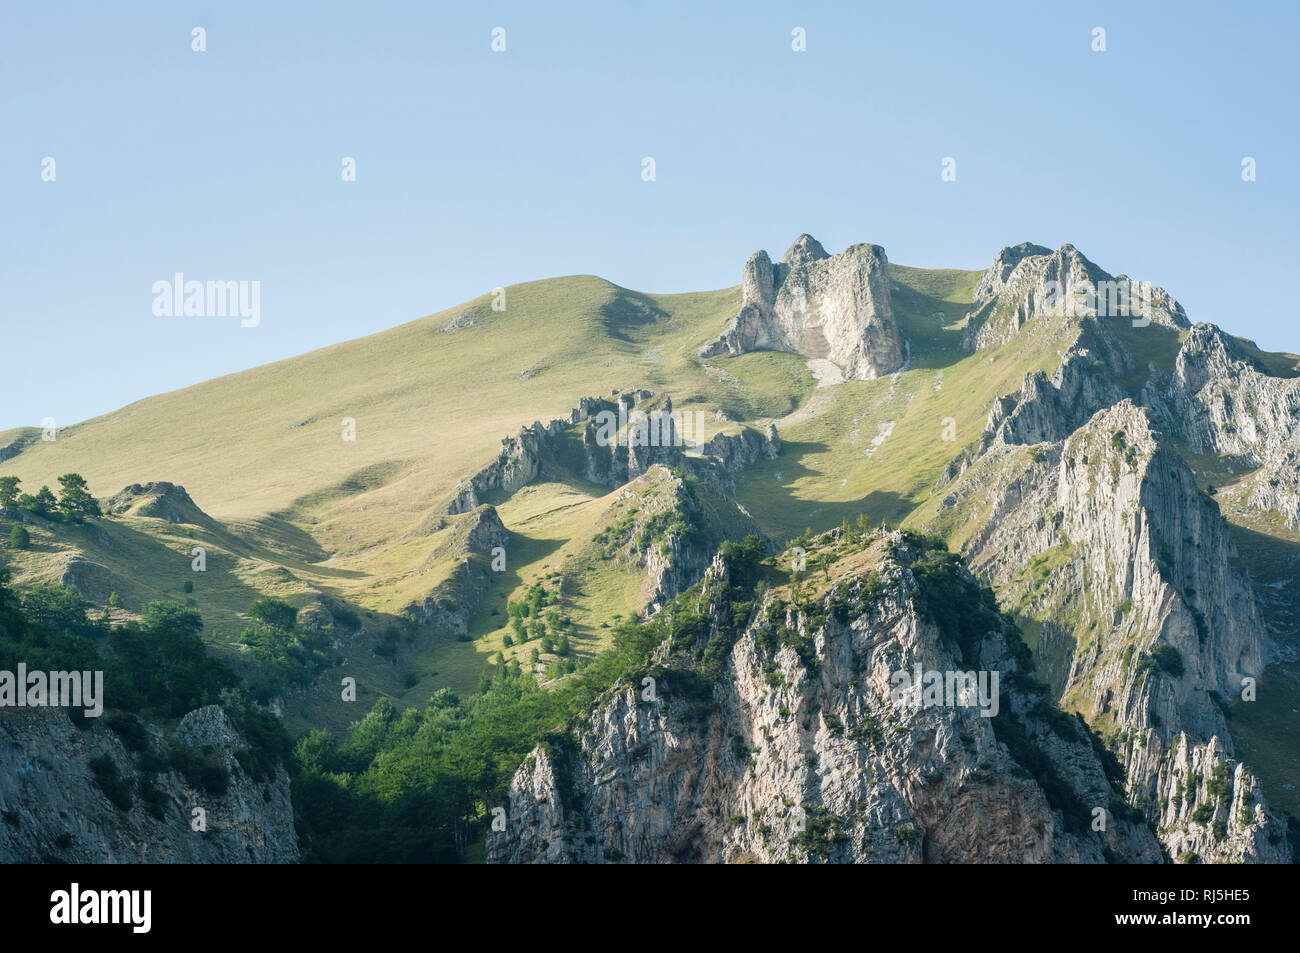 Europa, Italien, Marken, Die Sibillinische Berge nahe der Gola dell'Infernaccio (Teufelsschlucht) Foto Stock